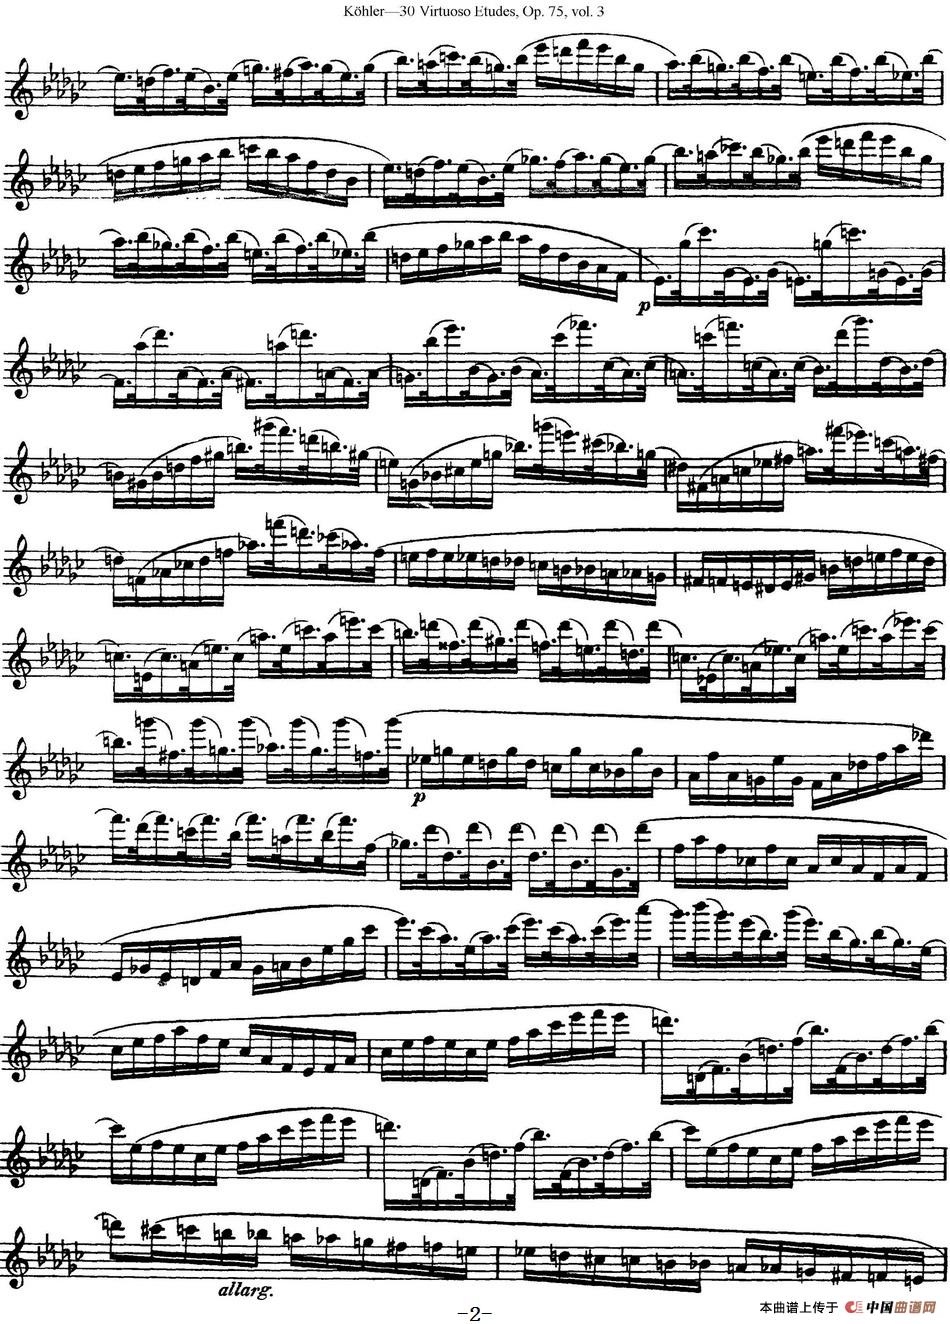 柯勒30首高级长笛练习曲作品75号（NO.21）长笛谱